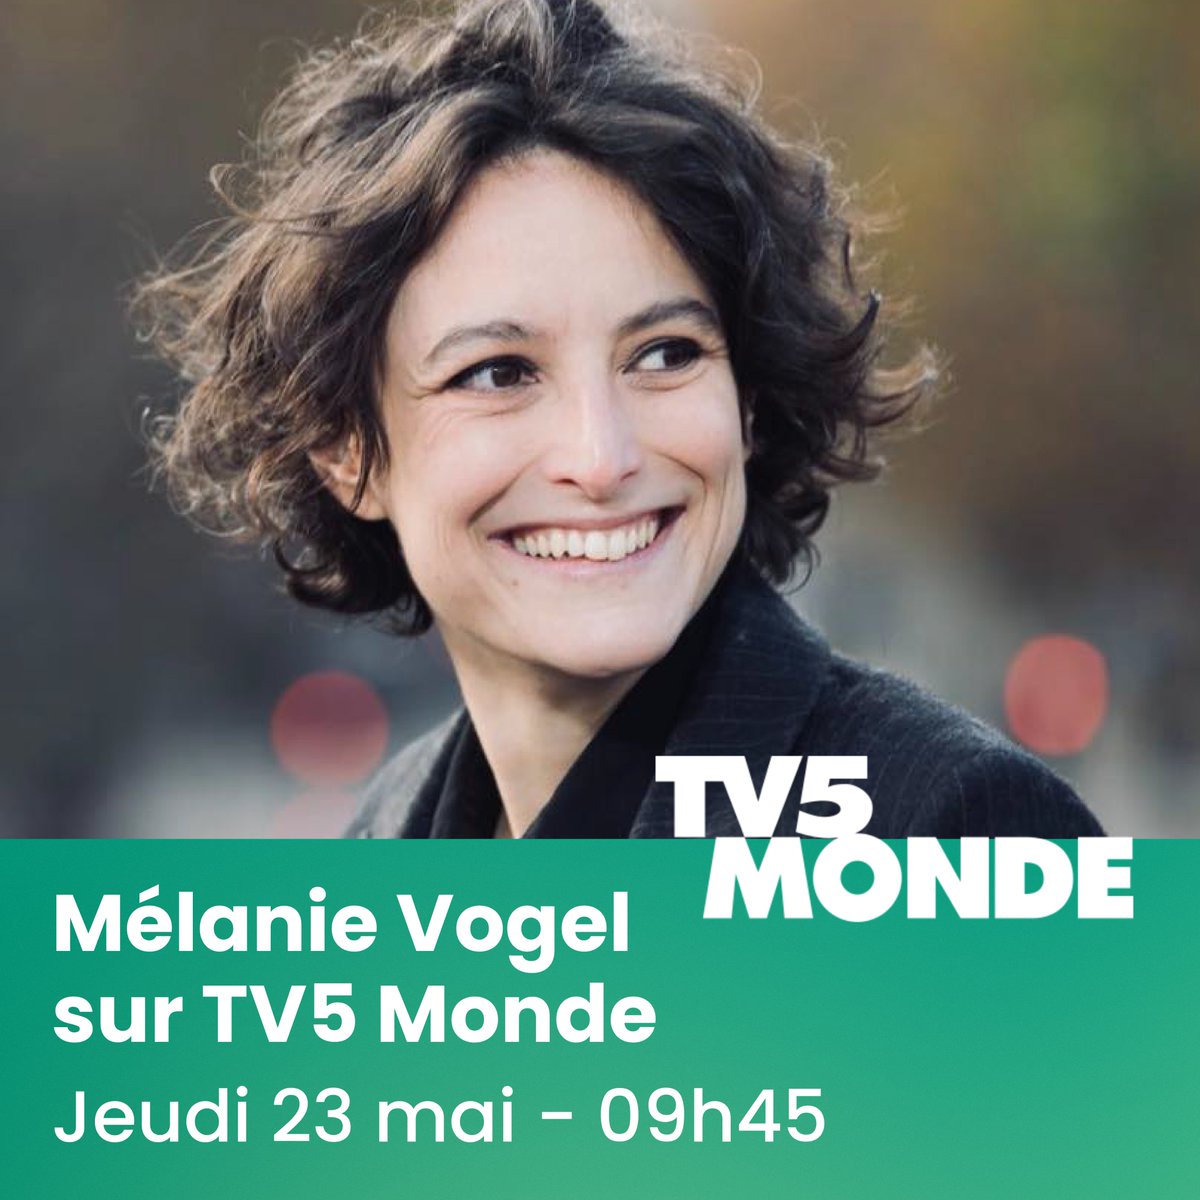 📺 On se retrouve demain, à 9h45, sur @TV5MONDE ⤵️ europe.tv5monde.com/fr/direct